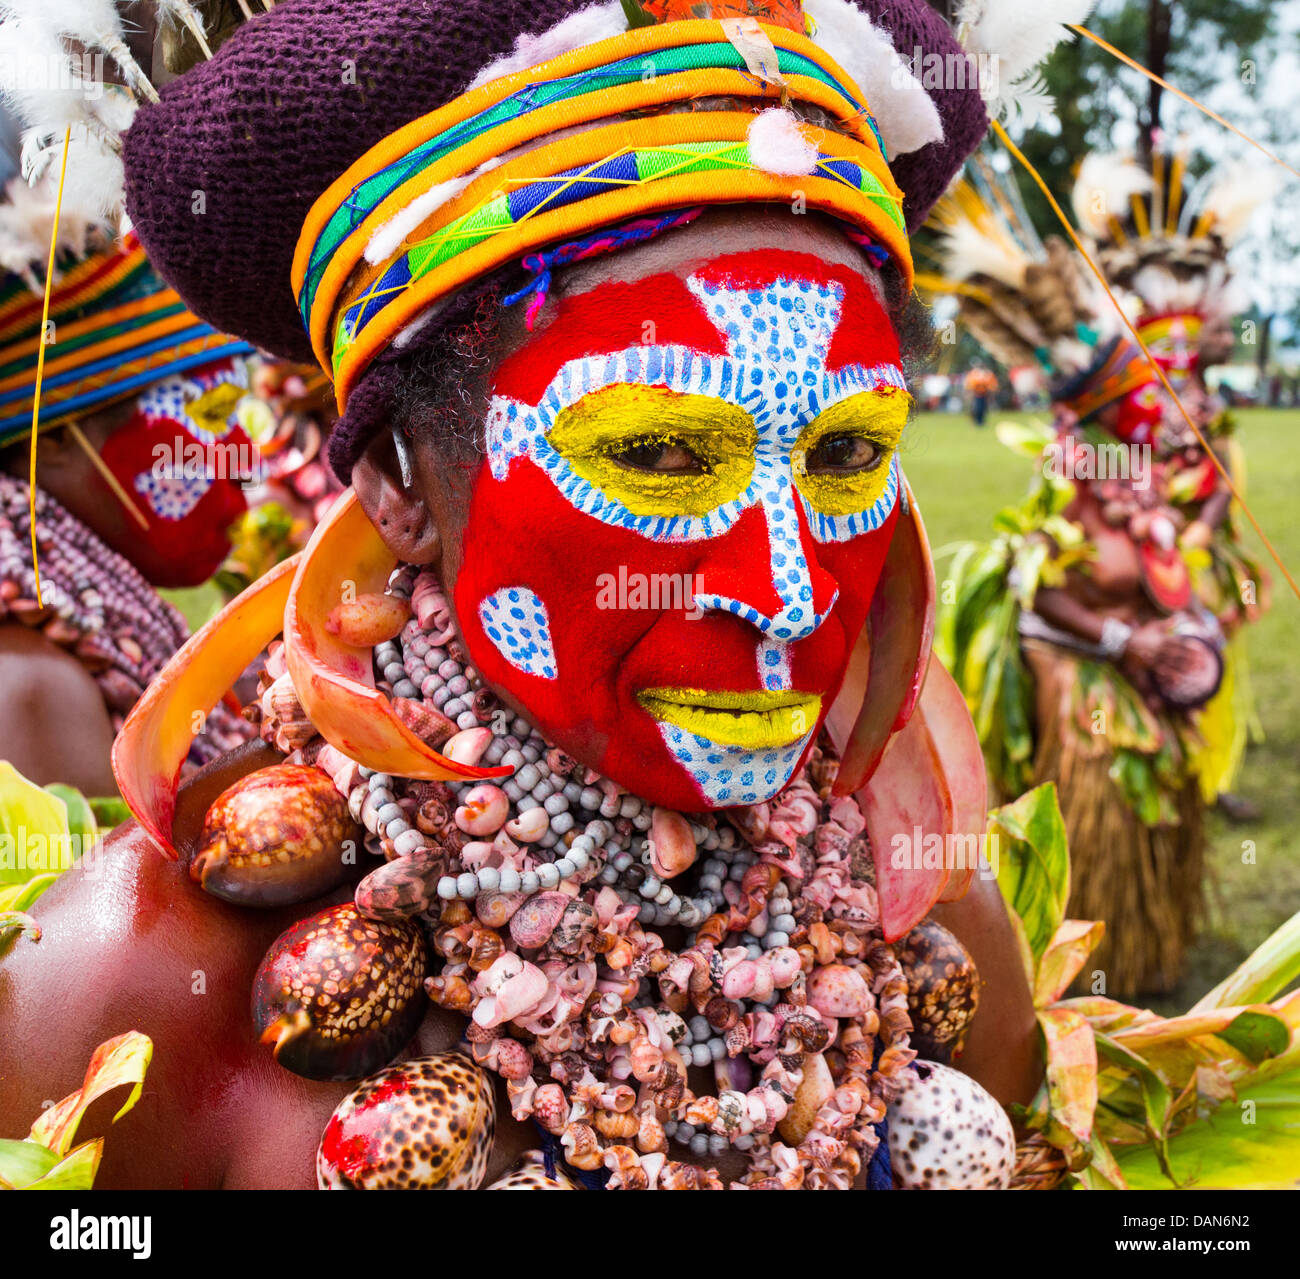 Femme Tribal avec son visage peint de couleurs vives et portant un collier de coquillages au festival de Goroka en Papouasie Nouvelle Guinée Banque D'Images